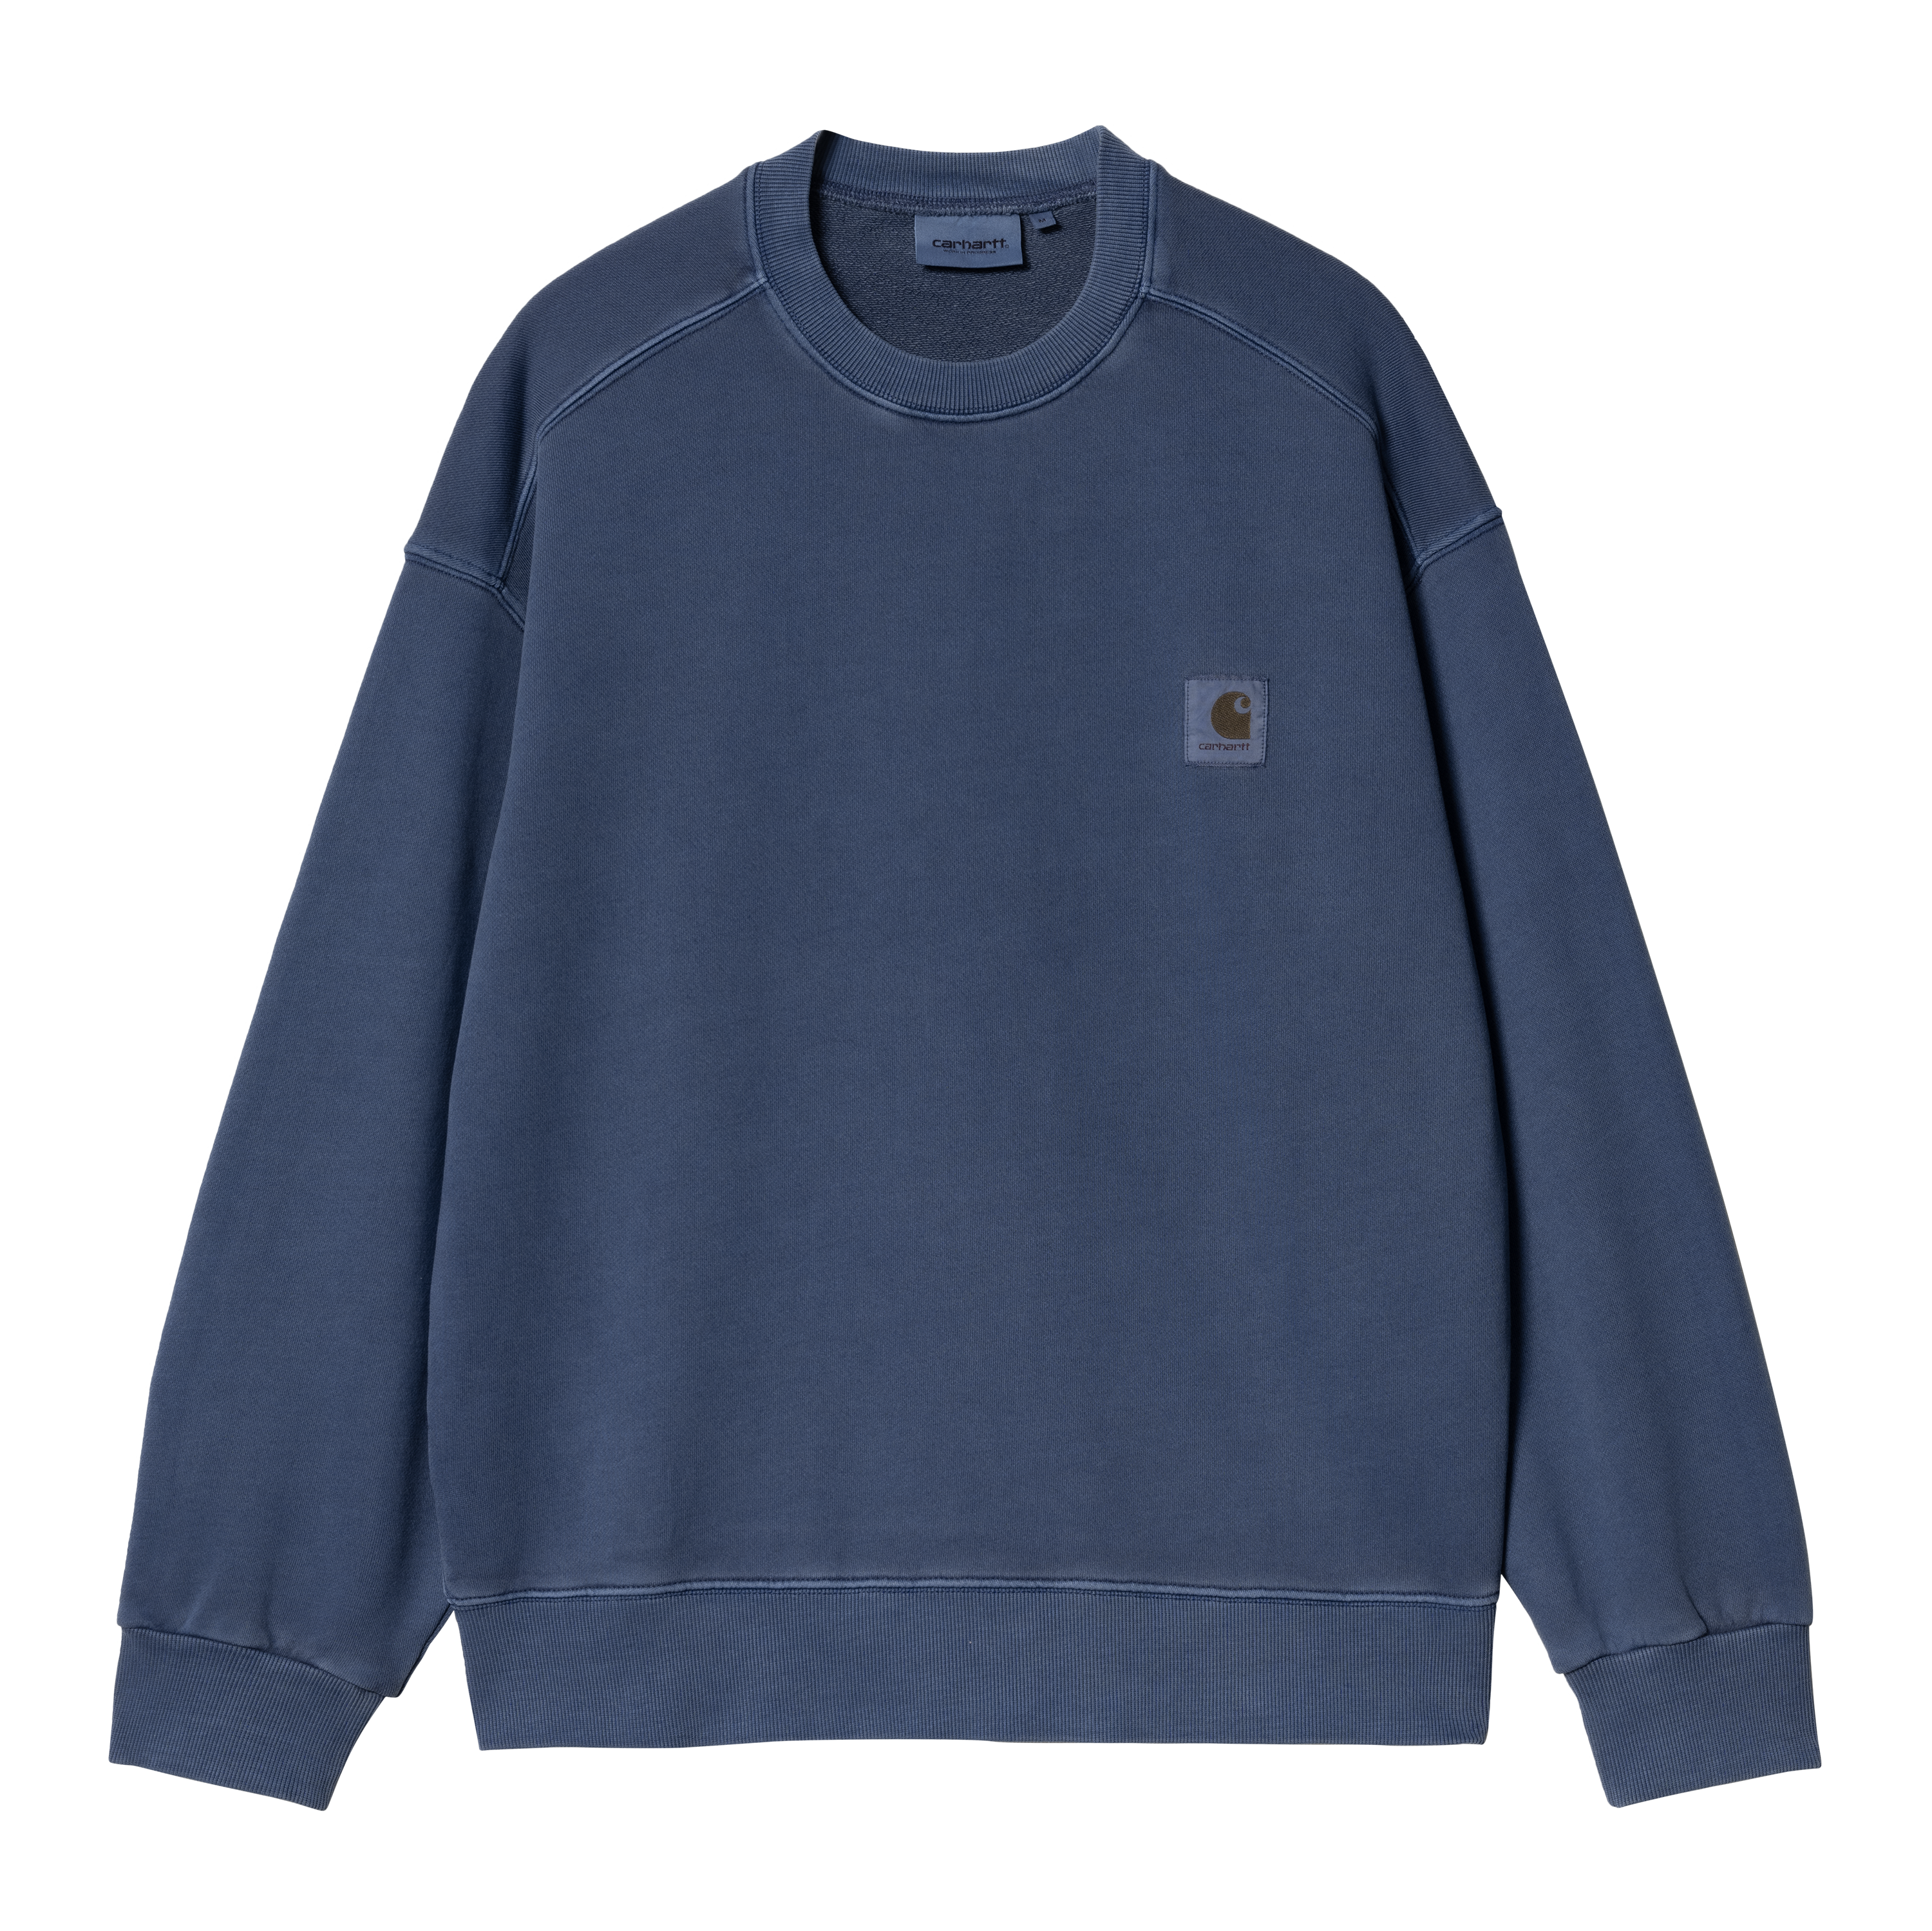 Carhartt WIP Nelson Sweatshirt in Blu